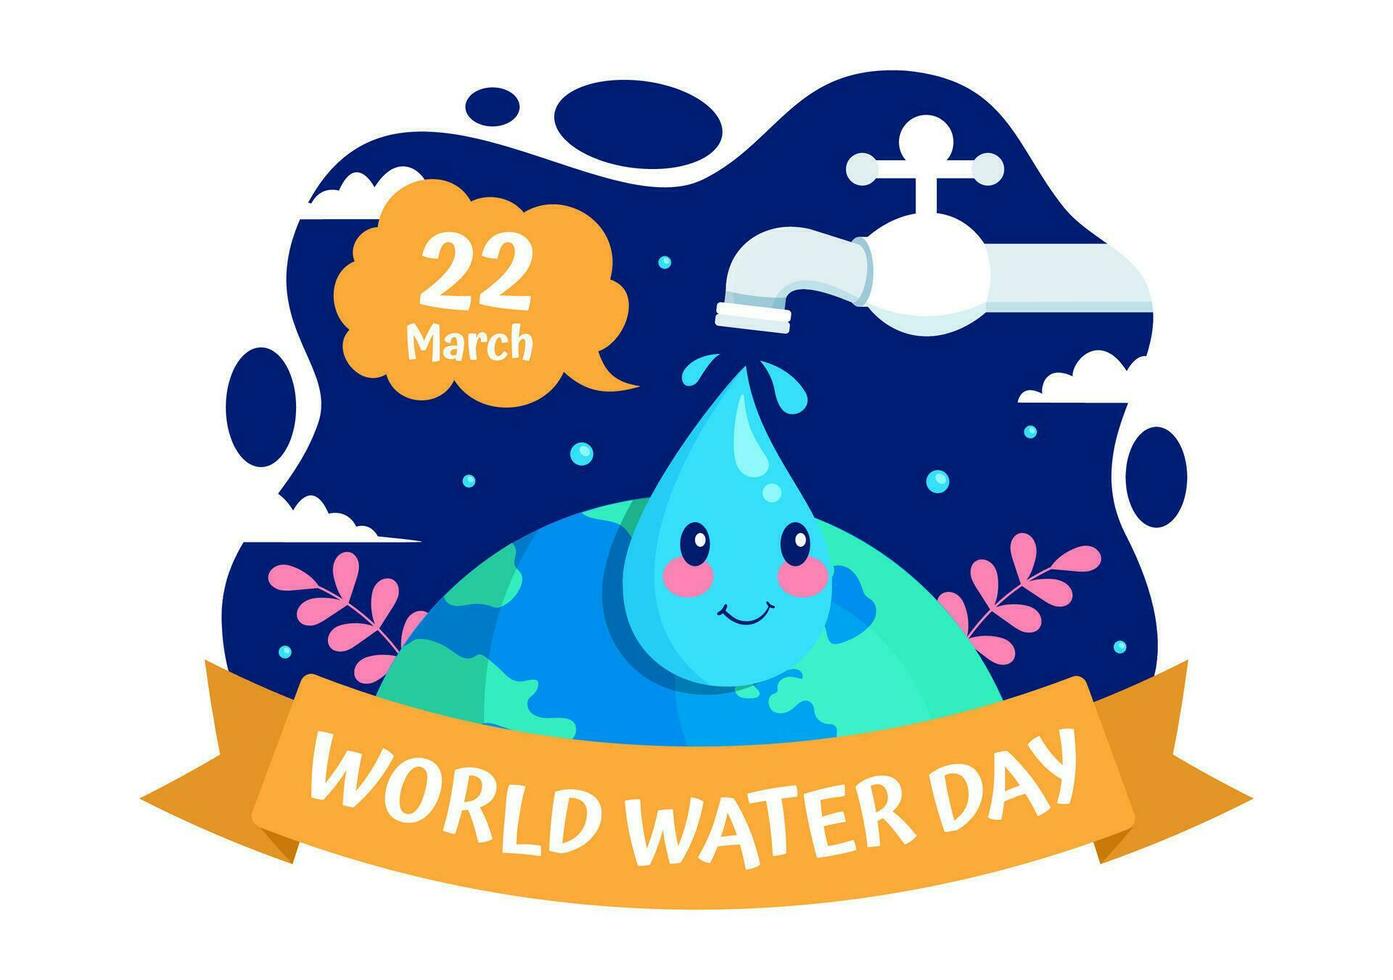 Welt Wasser Tag Vektor Illustration auf 22 März mit Wassertropfen und Wasserhähne zu speichern Erde und Verwaltung von frisches Wasser im Hintergrund Design